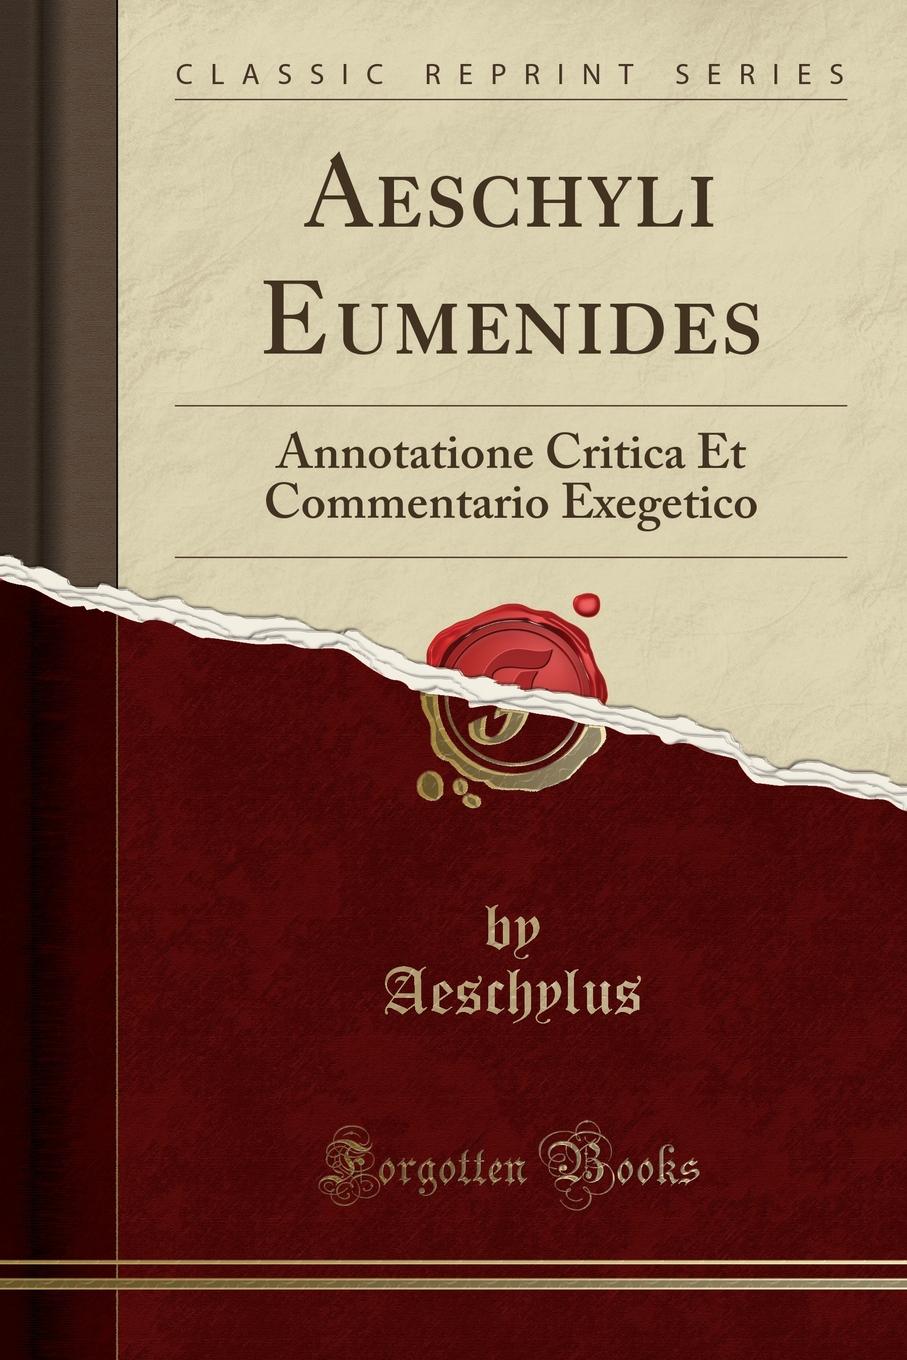 Aeschyli Eumenides. Annotatione Critica Et Commentario Exegetico (Classic Reprint)